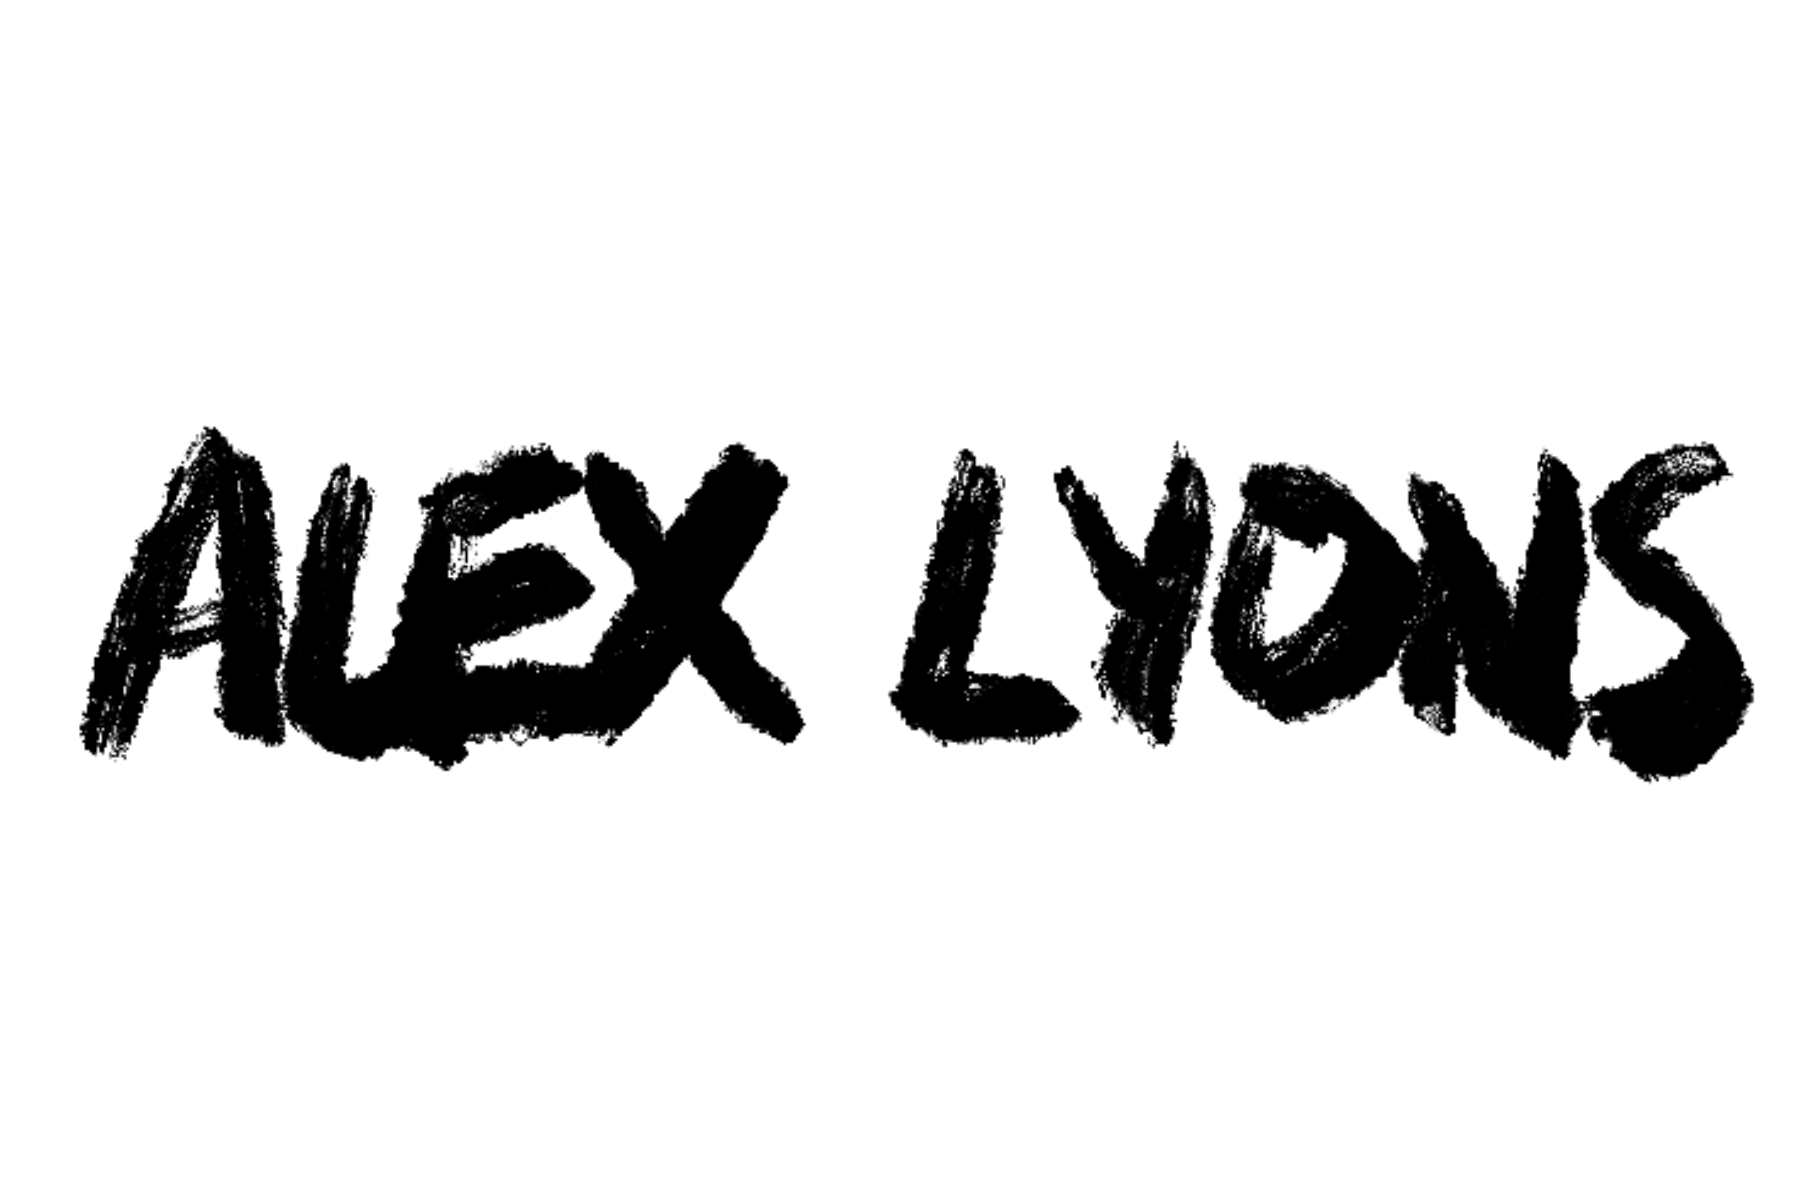 Alex Lyons